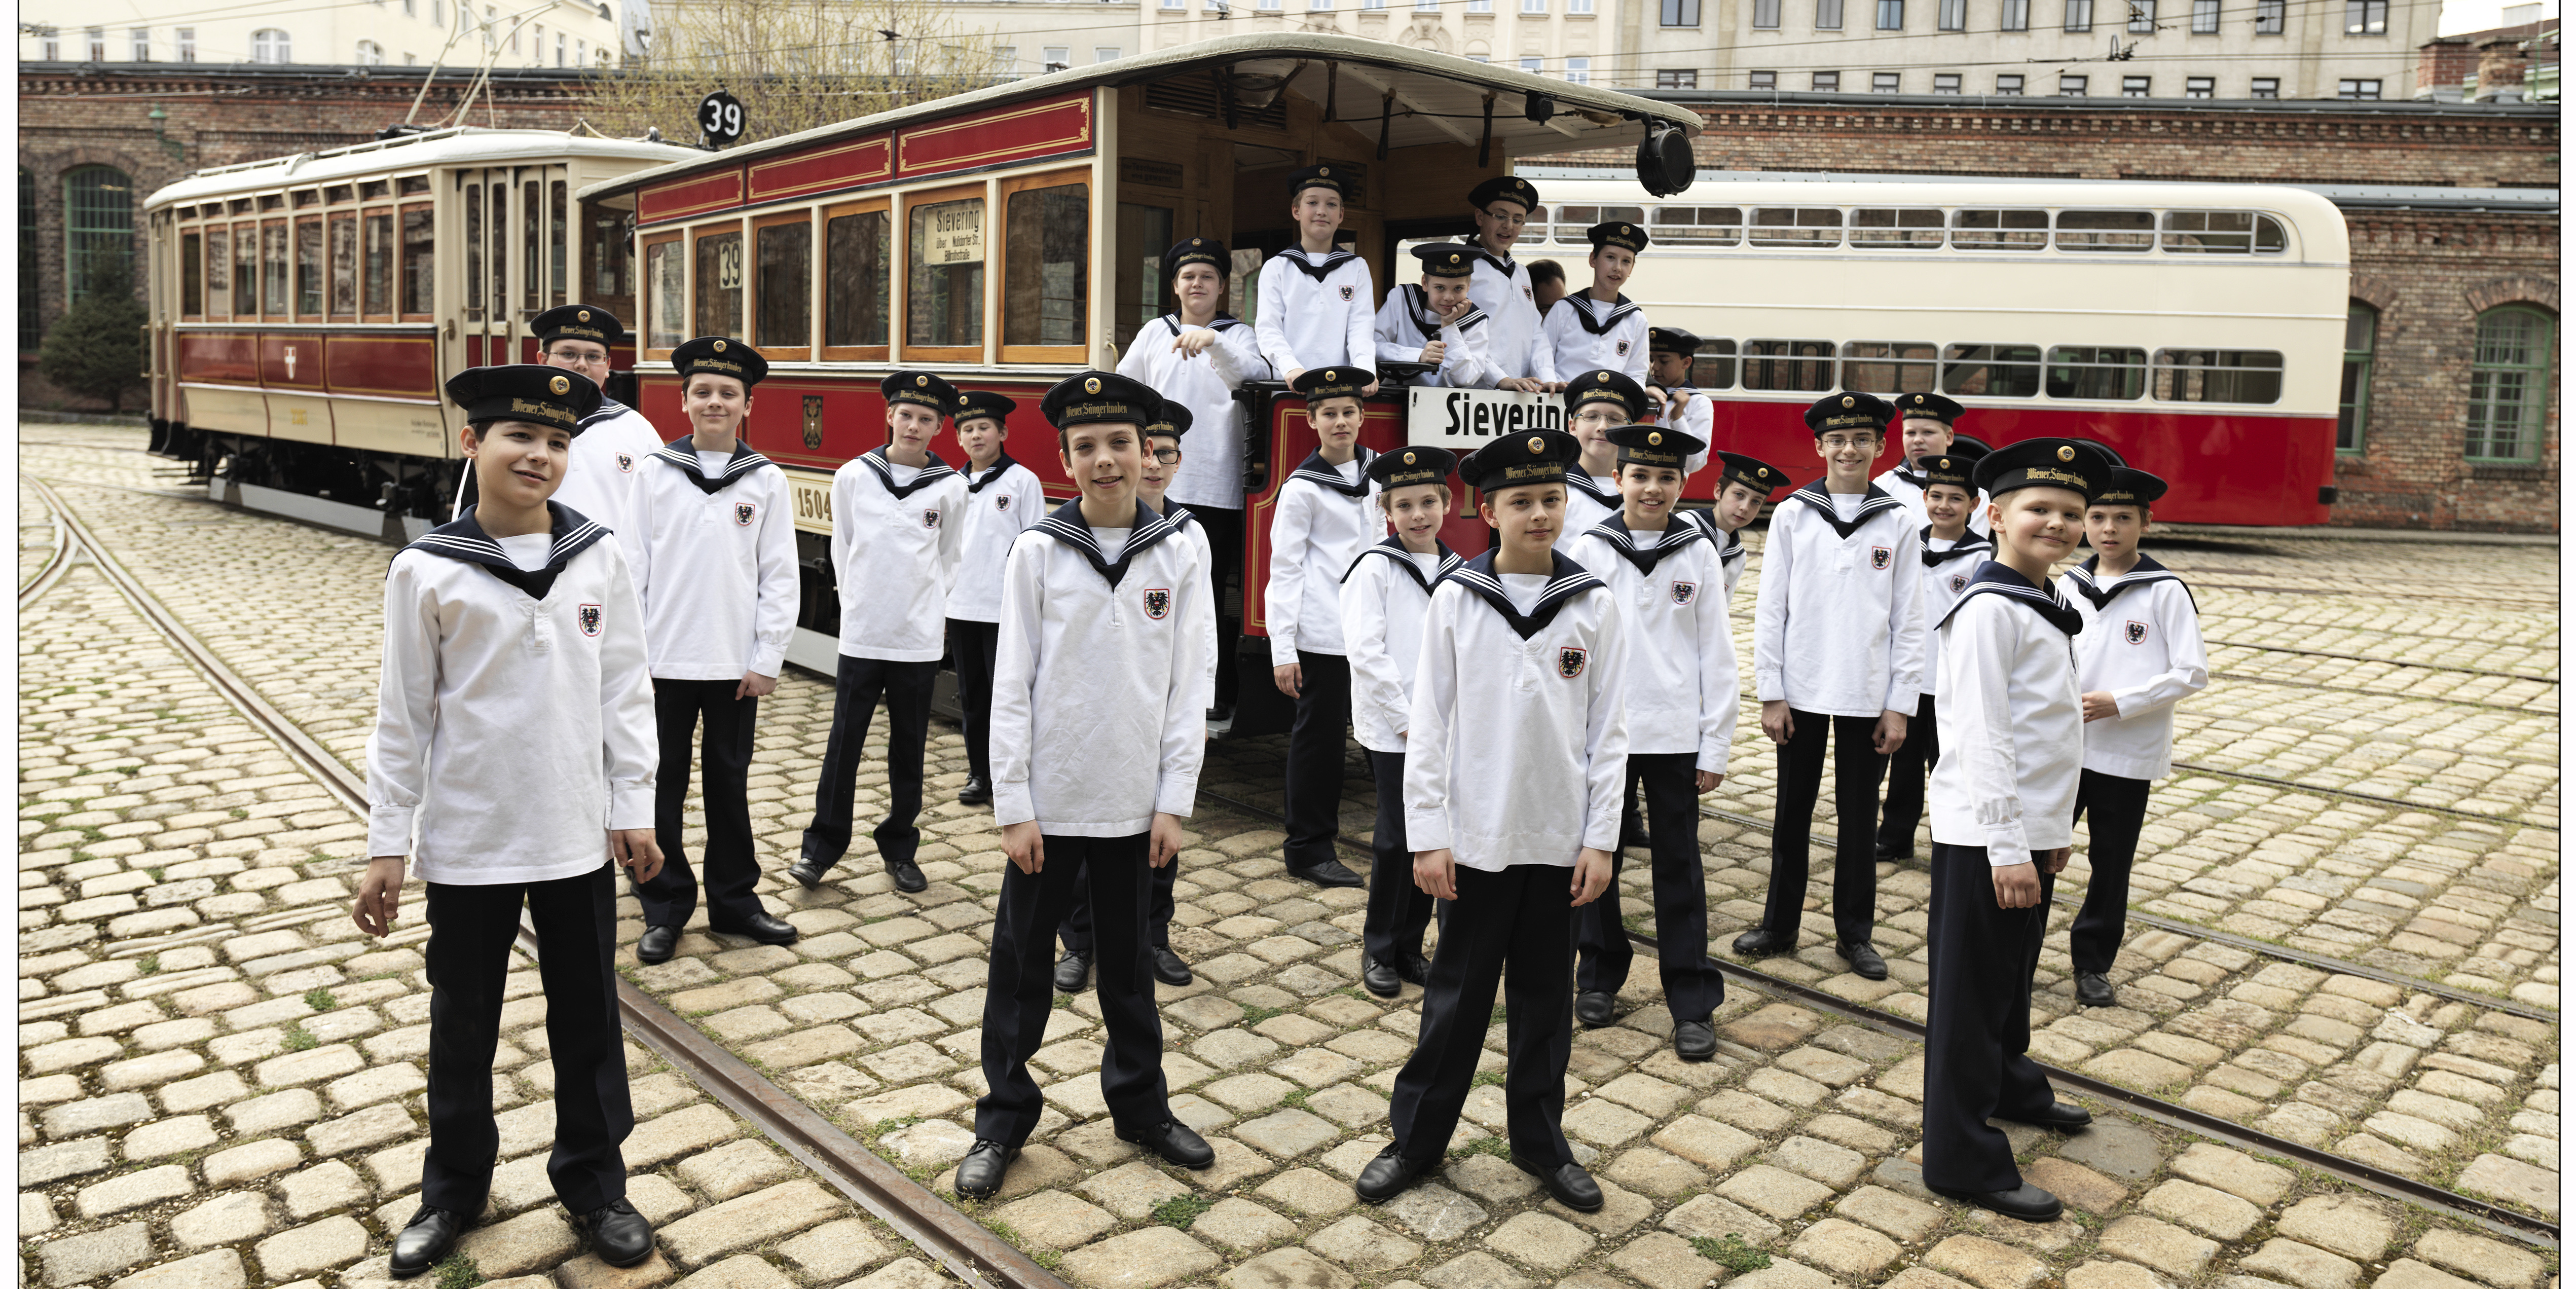 Chor der Wiener Sängerknaben im Matrosenkostüm mit Hüten und weißen Hemden